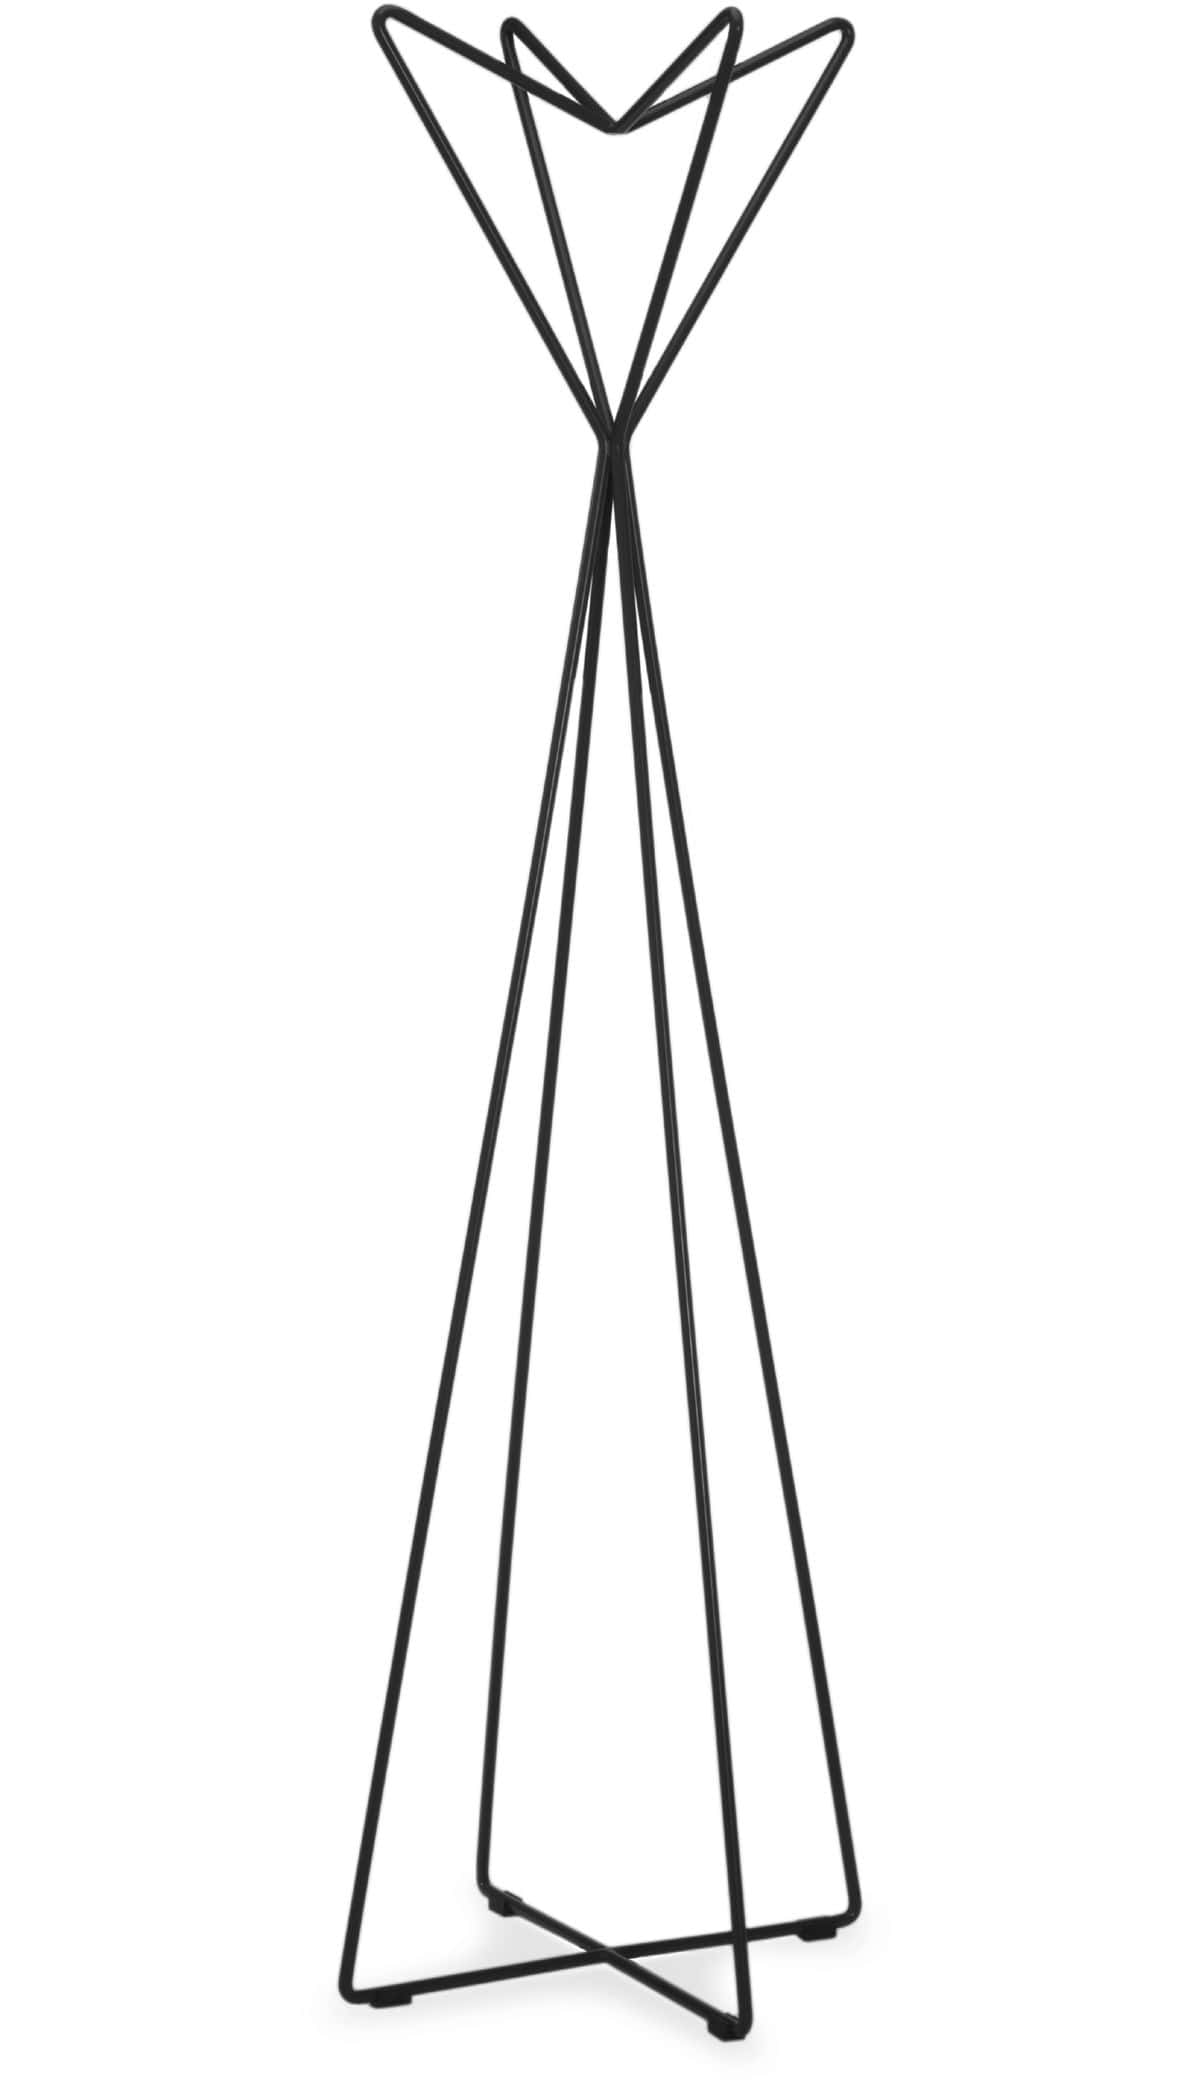 Jolie AP, Coat hanger in metal rod